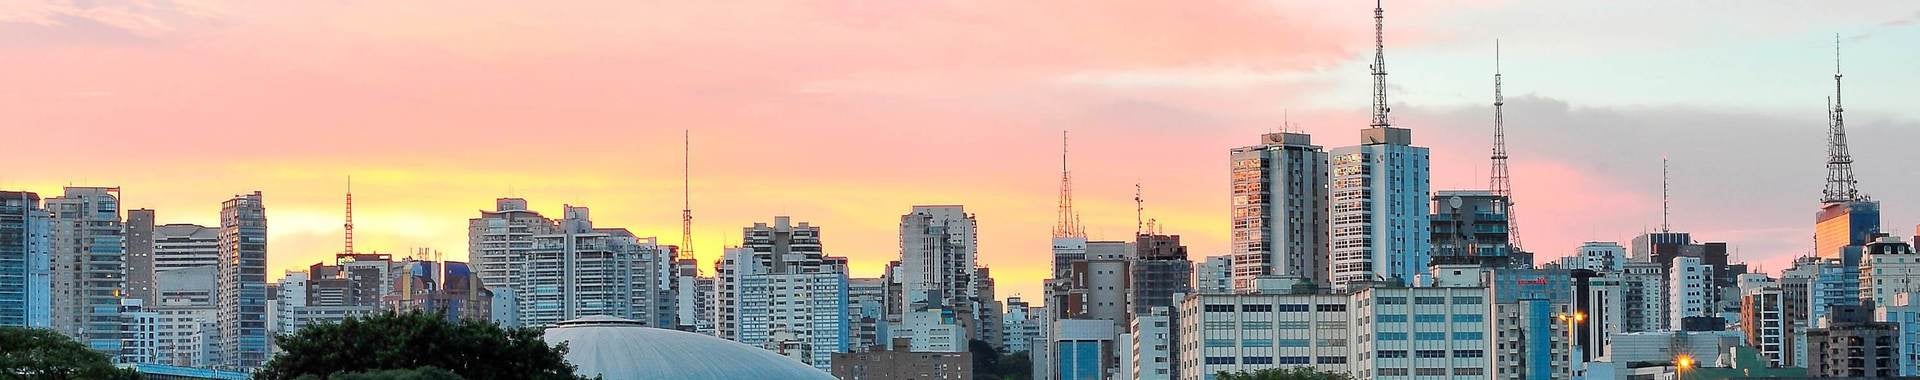 Horizonte de Sao Paulo visto desde el parque Ibirapuera